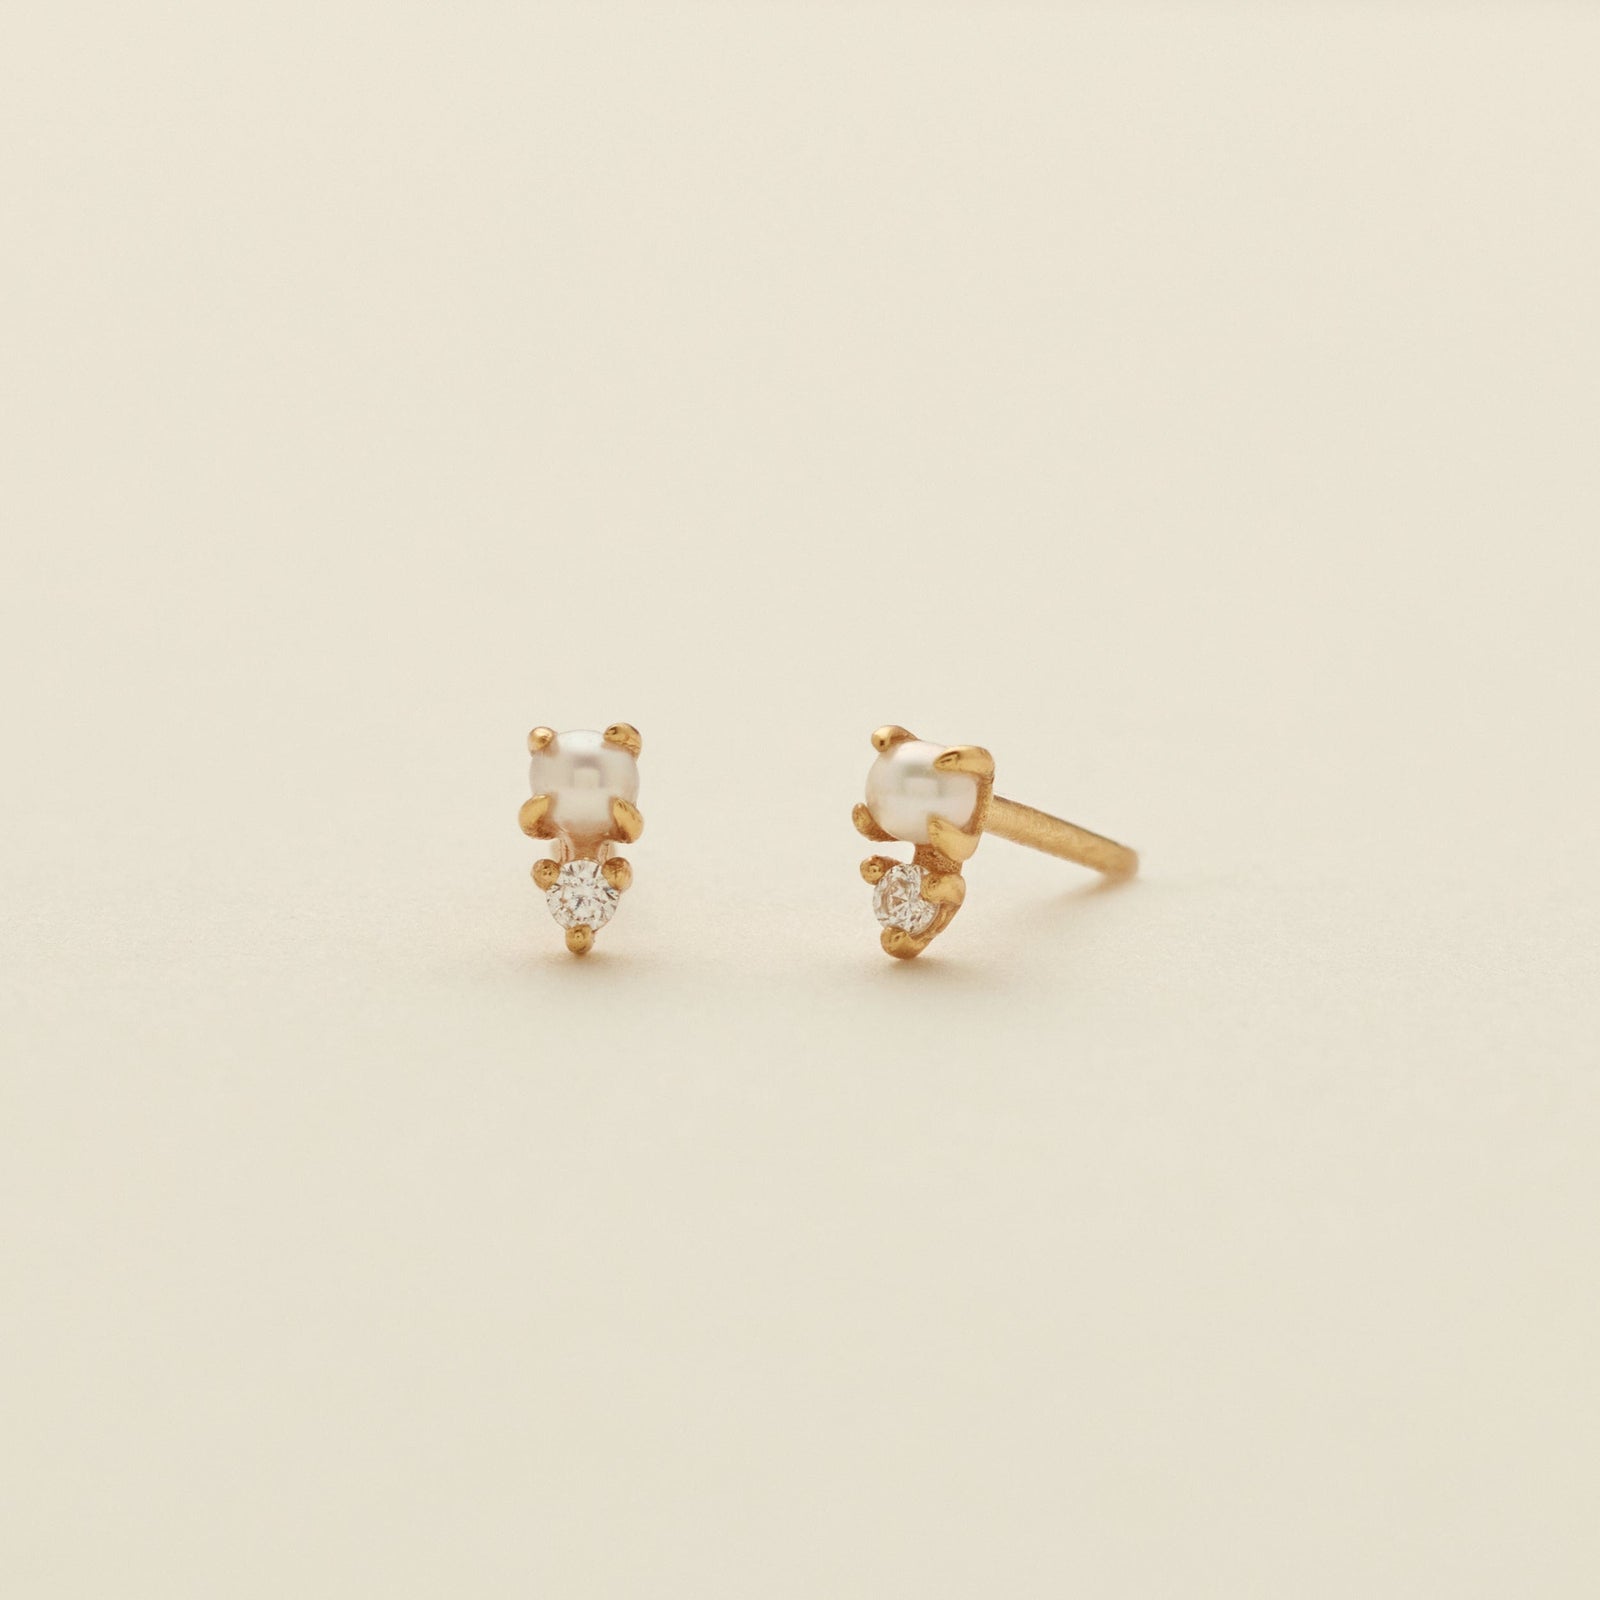 Petite Pearl Stud Earrings Gold Vermeil Earring